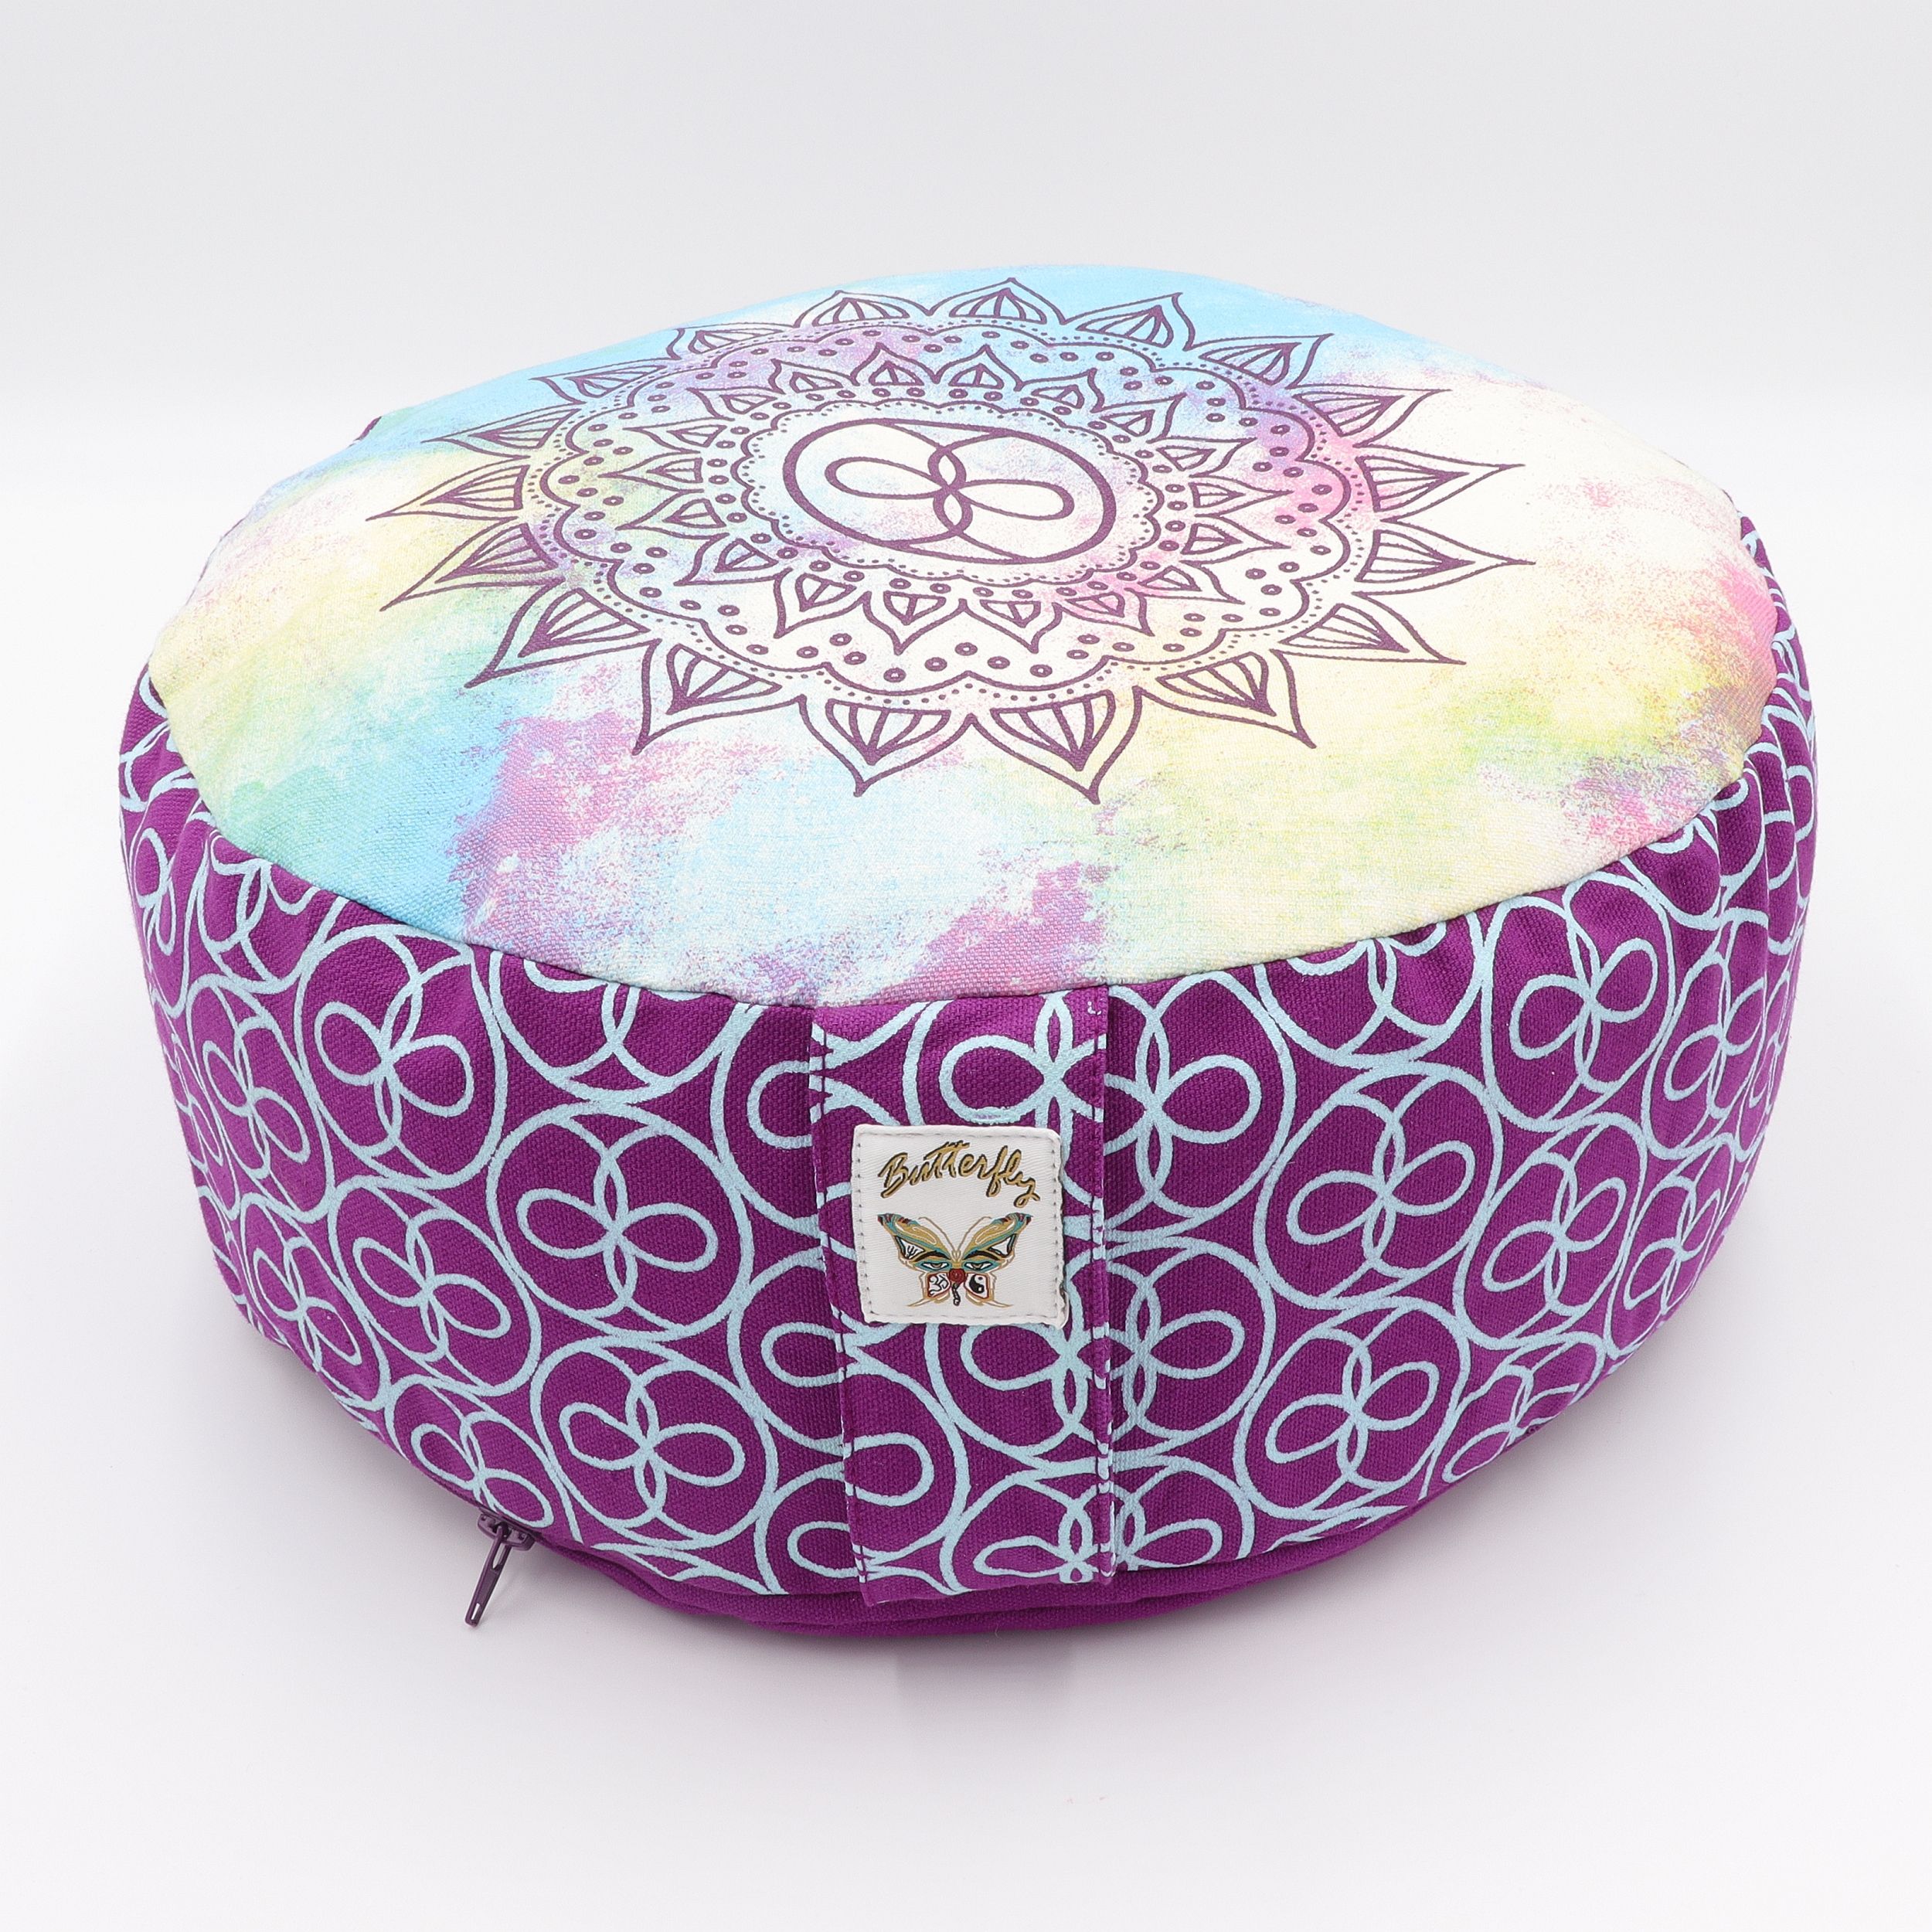 Meditationskissen rund - Mandala Blockdruck - abnehmbarer Bezug aus 100% Baumwolle - Füllung 100% Buchweizenschalen - Dein neues Sitzkissen für Yoga und Meditation - bedrucktes Sitzkissen mit Trageschlaufe